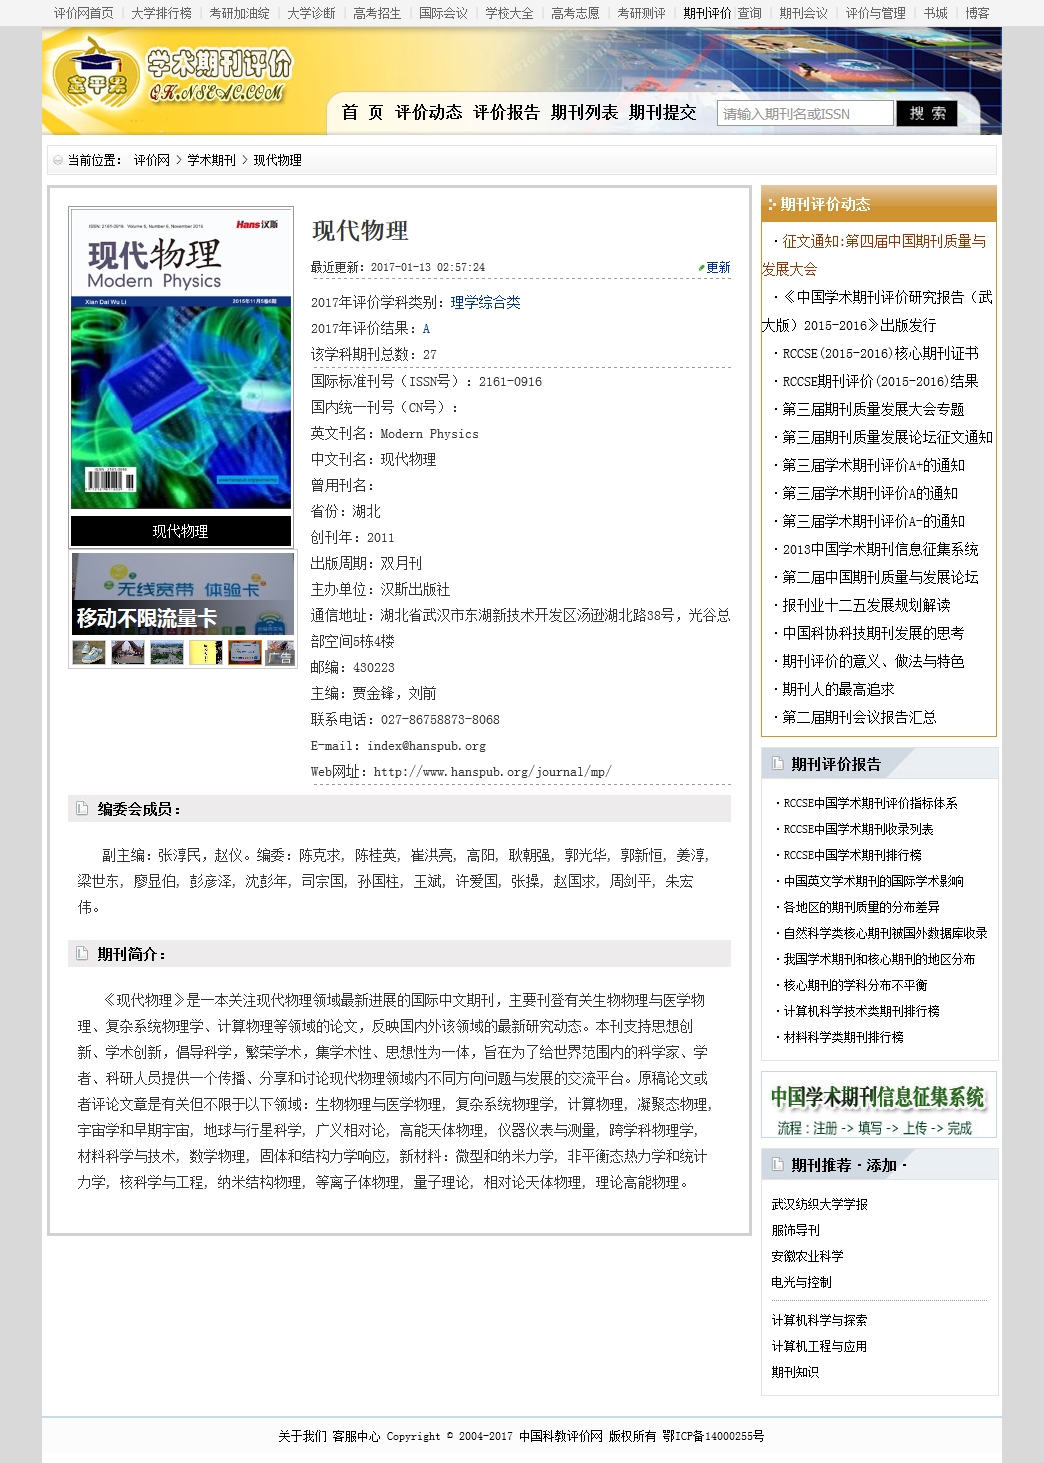 現代物理 RCCSE中文OA學術期刊收錄信息